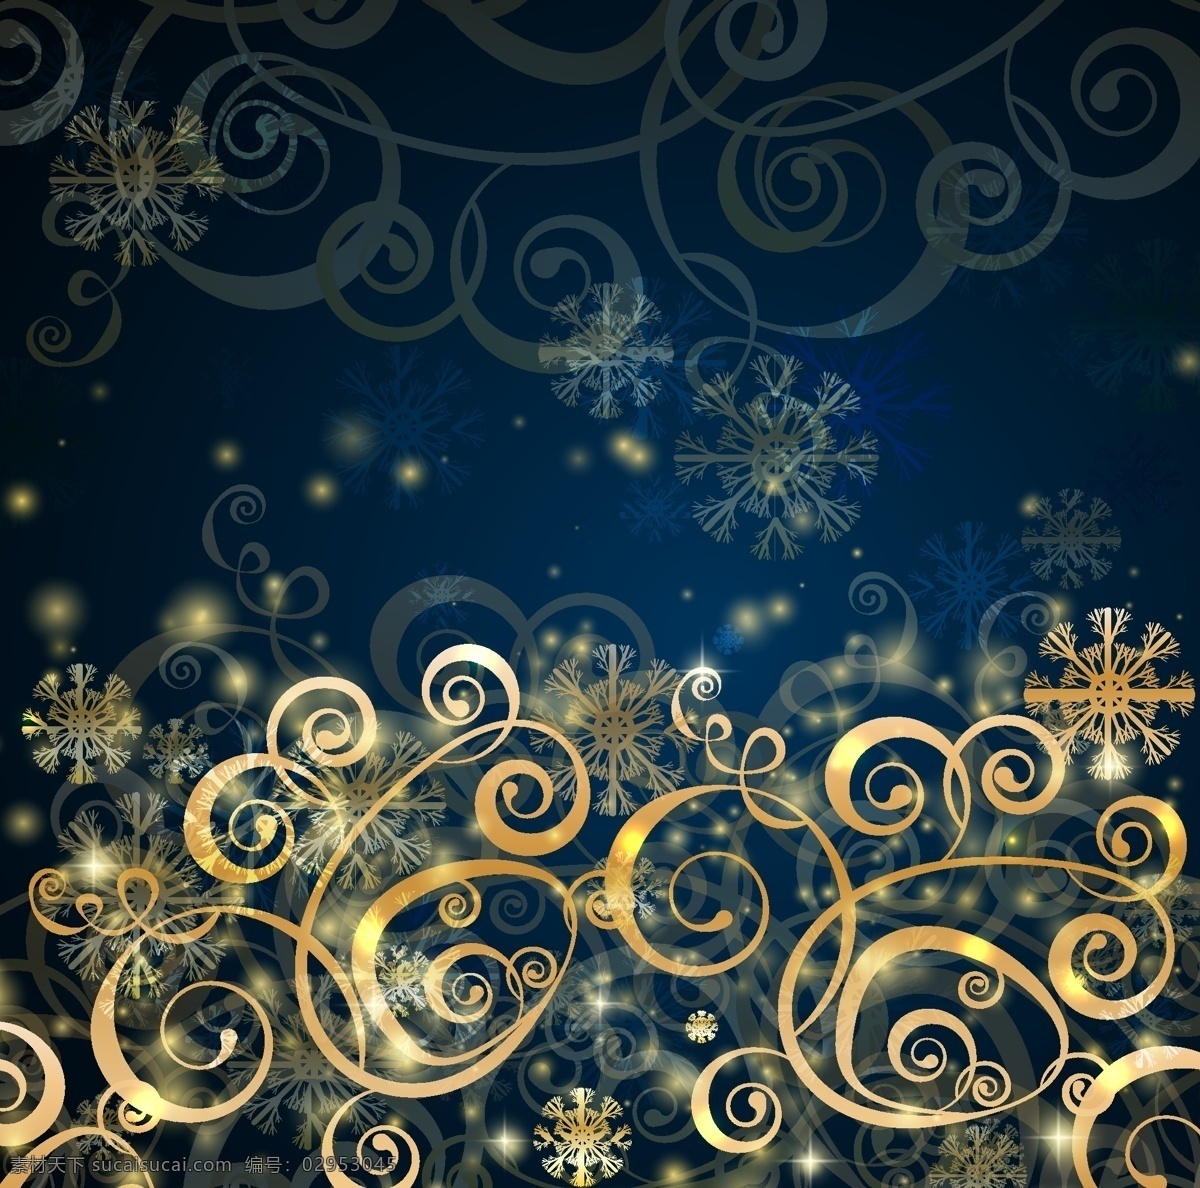 新年 花纹 装饰 背景 矢量图 边框 花朵 金色 模板 设计稿 圣诞节 素材元素 藤蔓 星光 图案 源文件